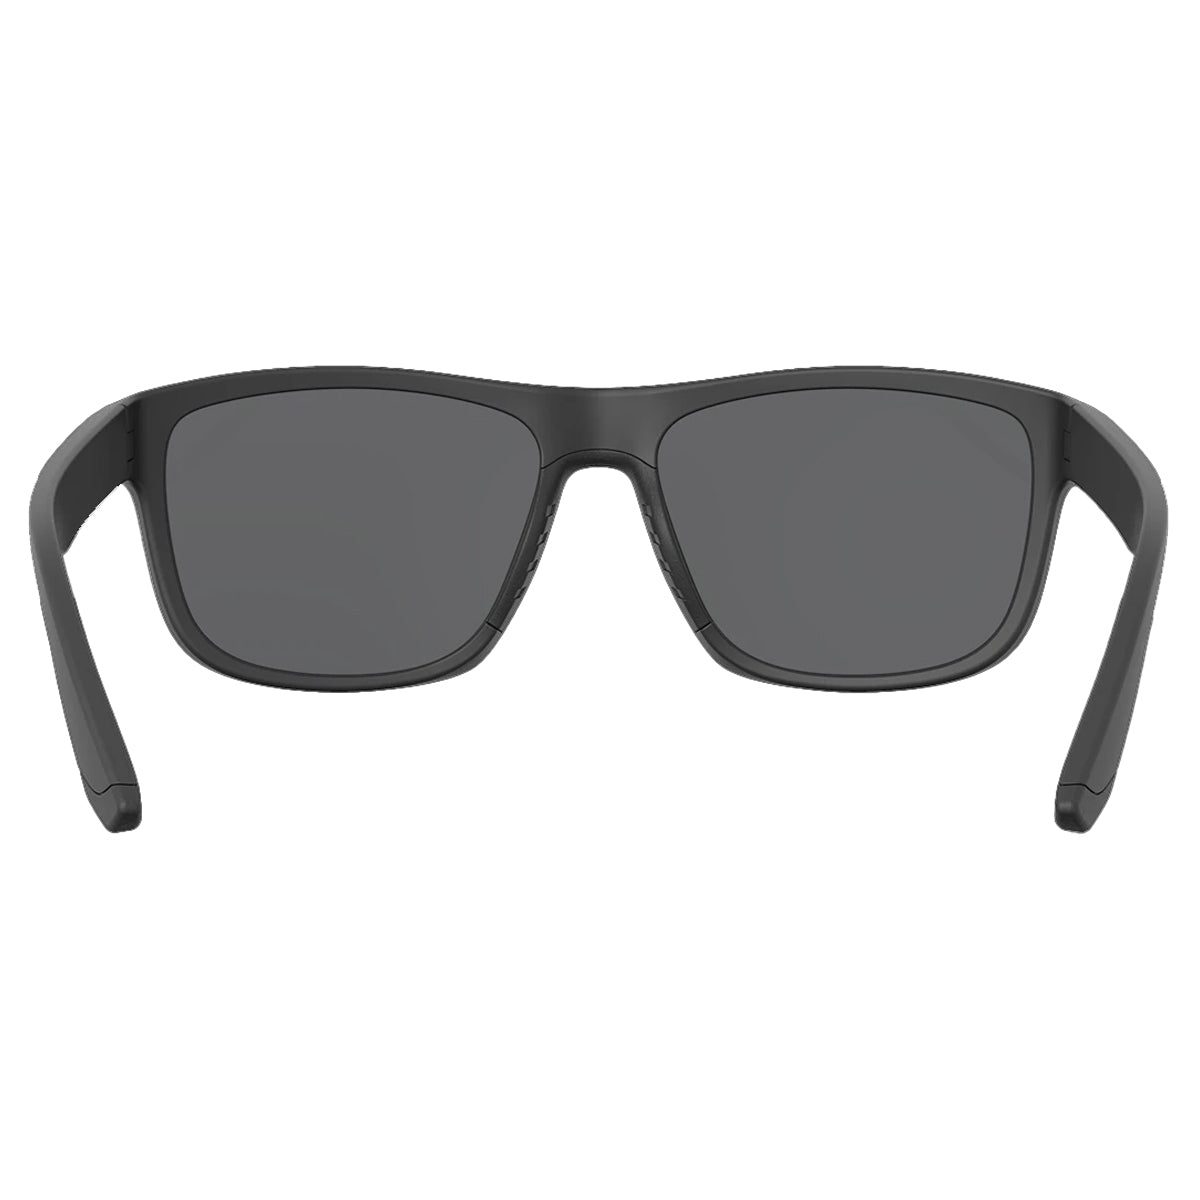 Leupold Katmai Sunglasses